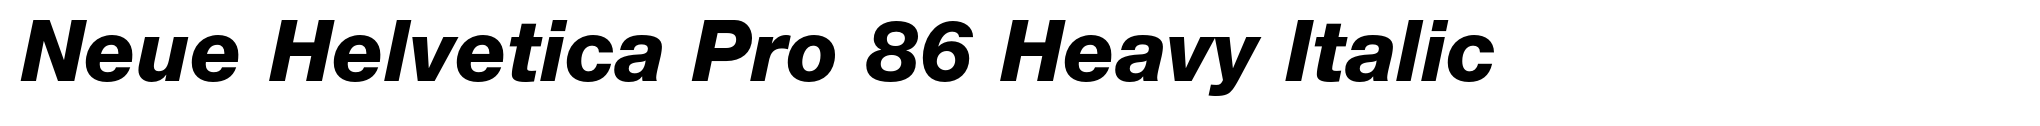 Neue Helvetica Pro 86 Heavy Italic image